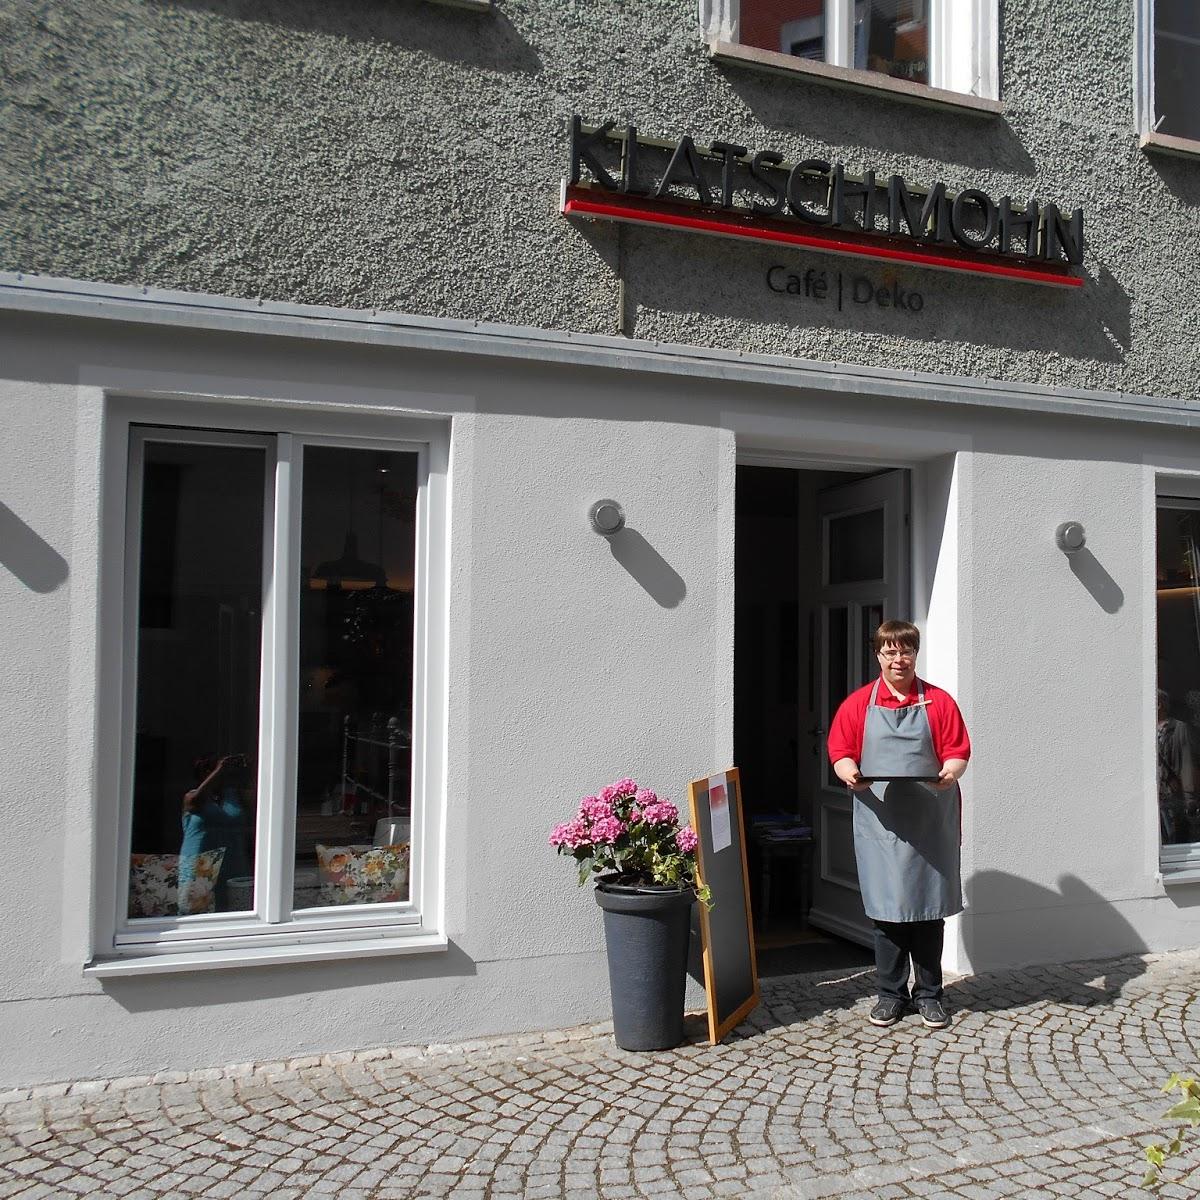 Restaurant "Café Klatschmohn" in Memmingen